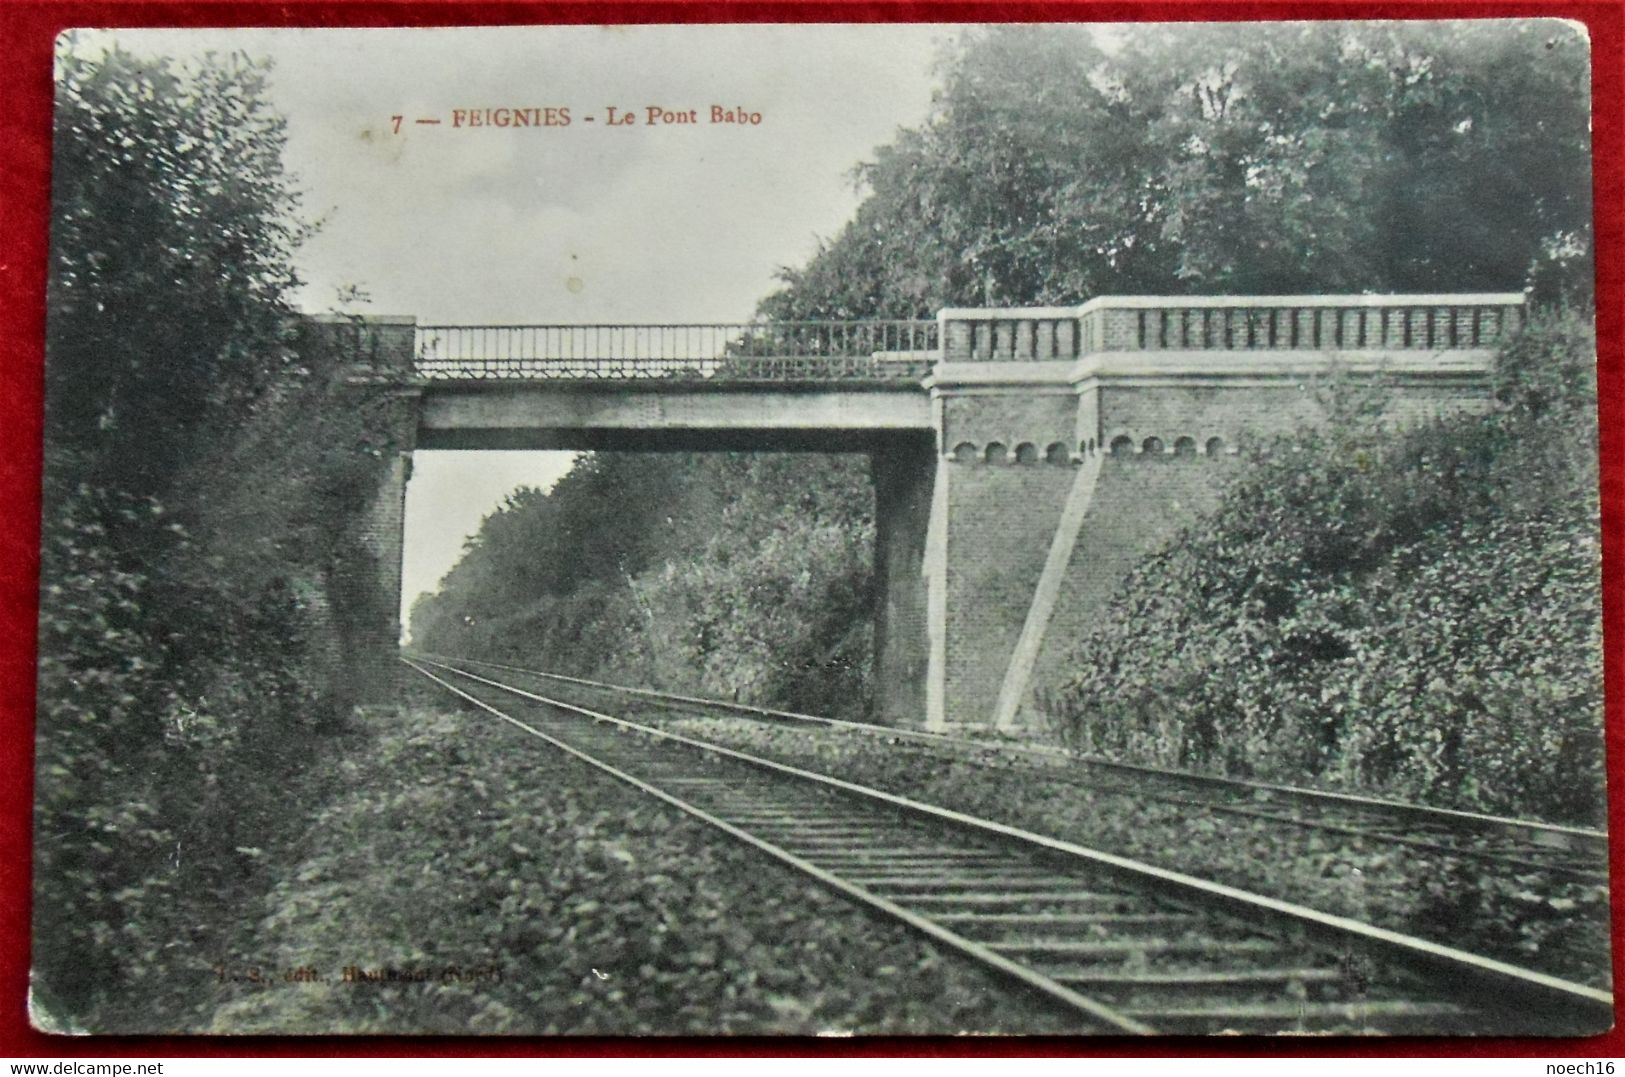 CPA 1913 Feignies Le Pont Babo (59 France) - Cachet Etoile, Relais Lombise, Lens, Hainaut, Belgique - Feignies